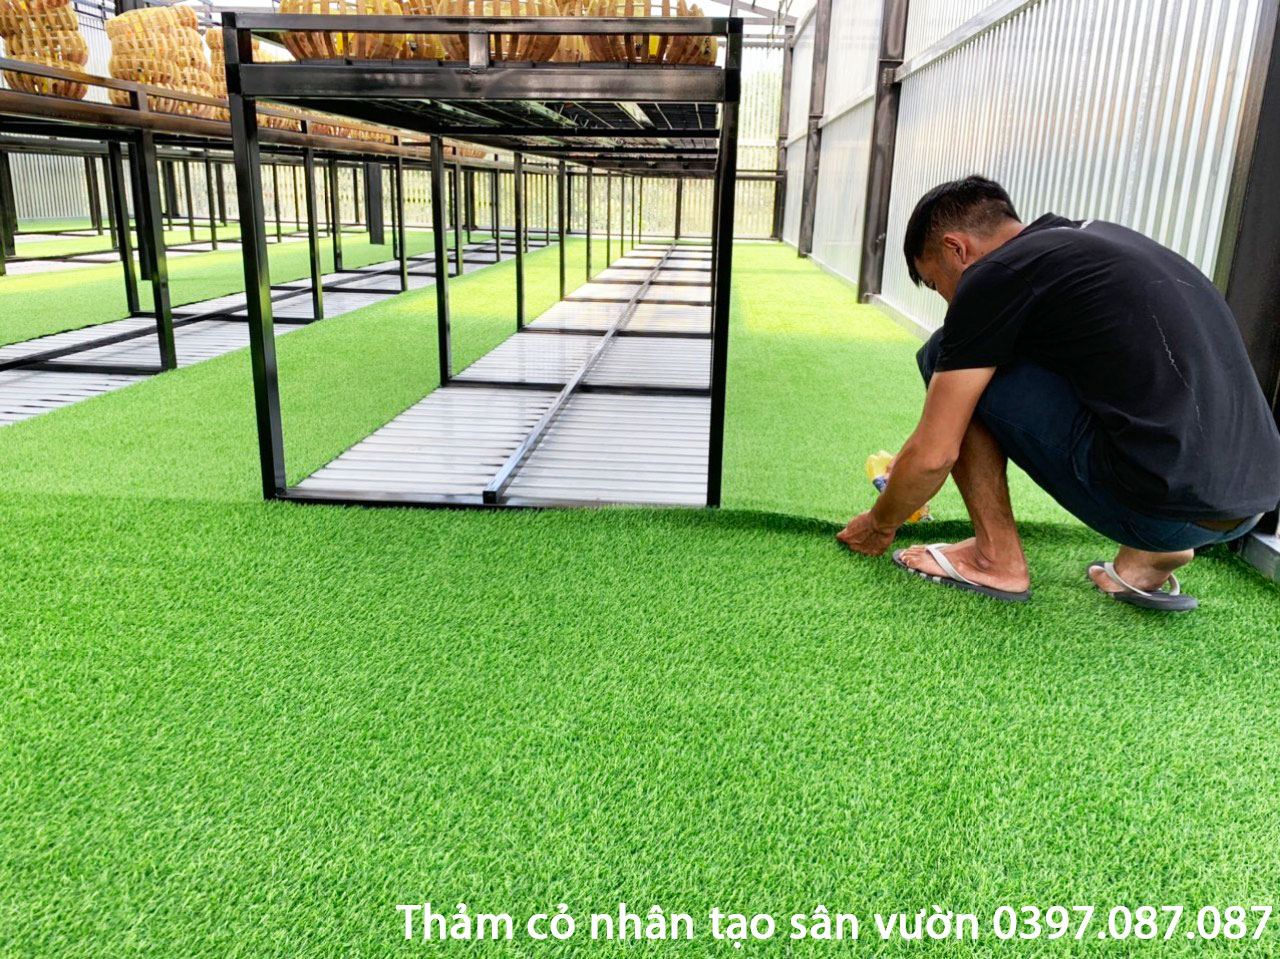 Địa chỉ mua thảm cỏ nhân tạo Quận Bình Thạnh Hồ Chí Minh